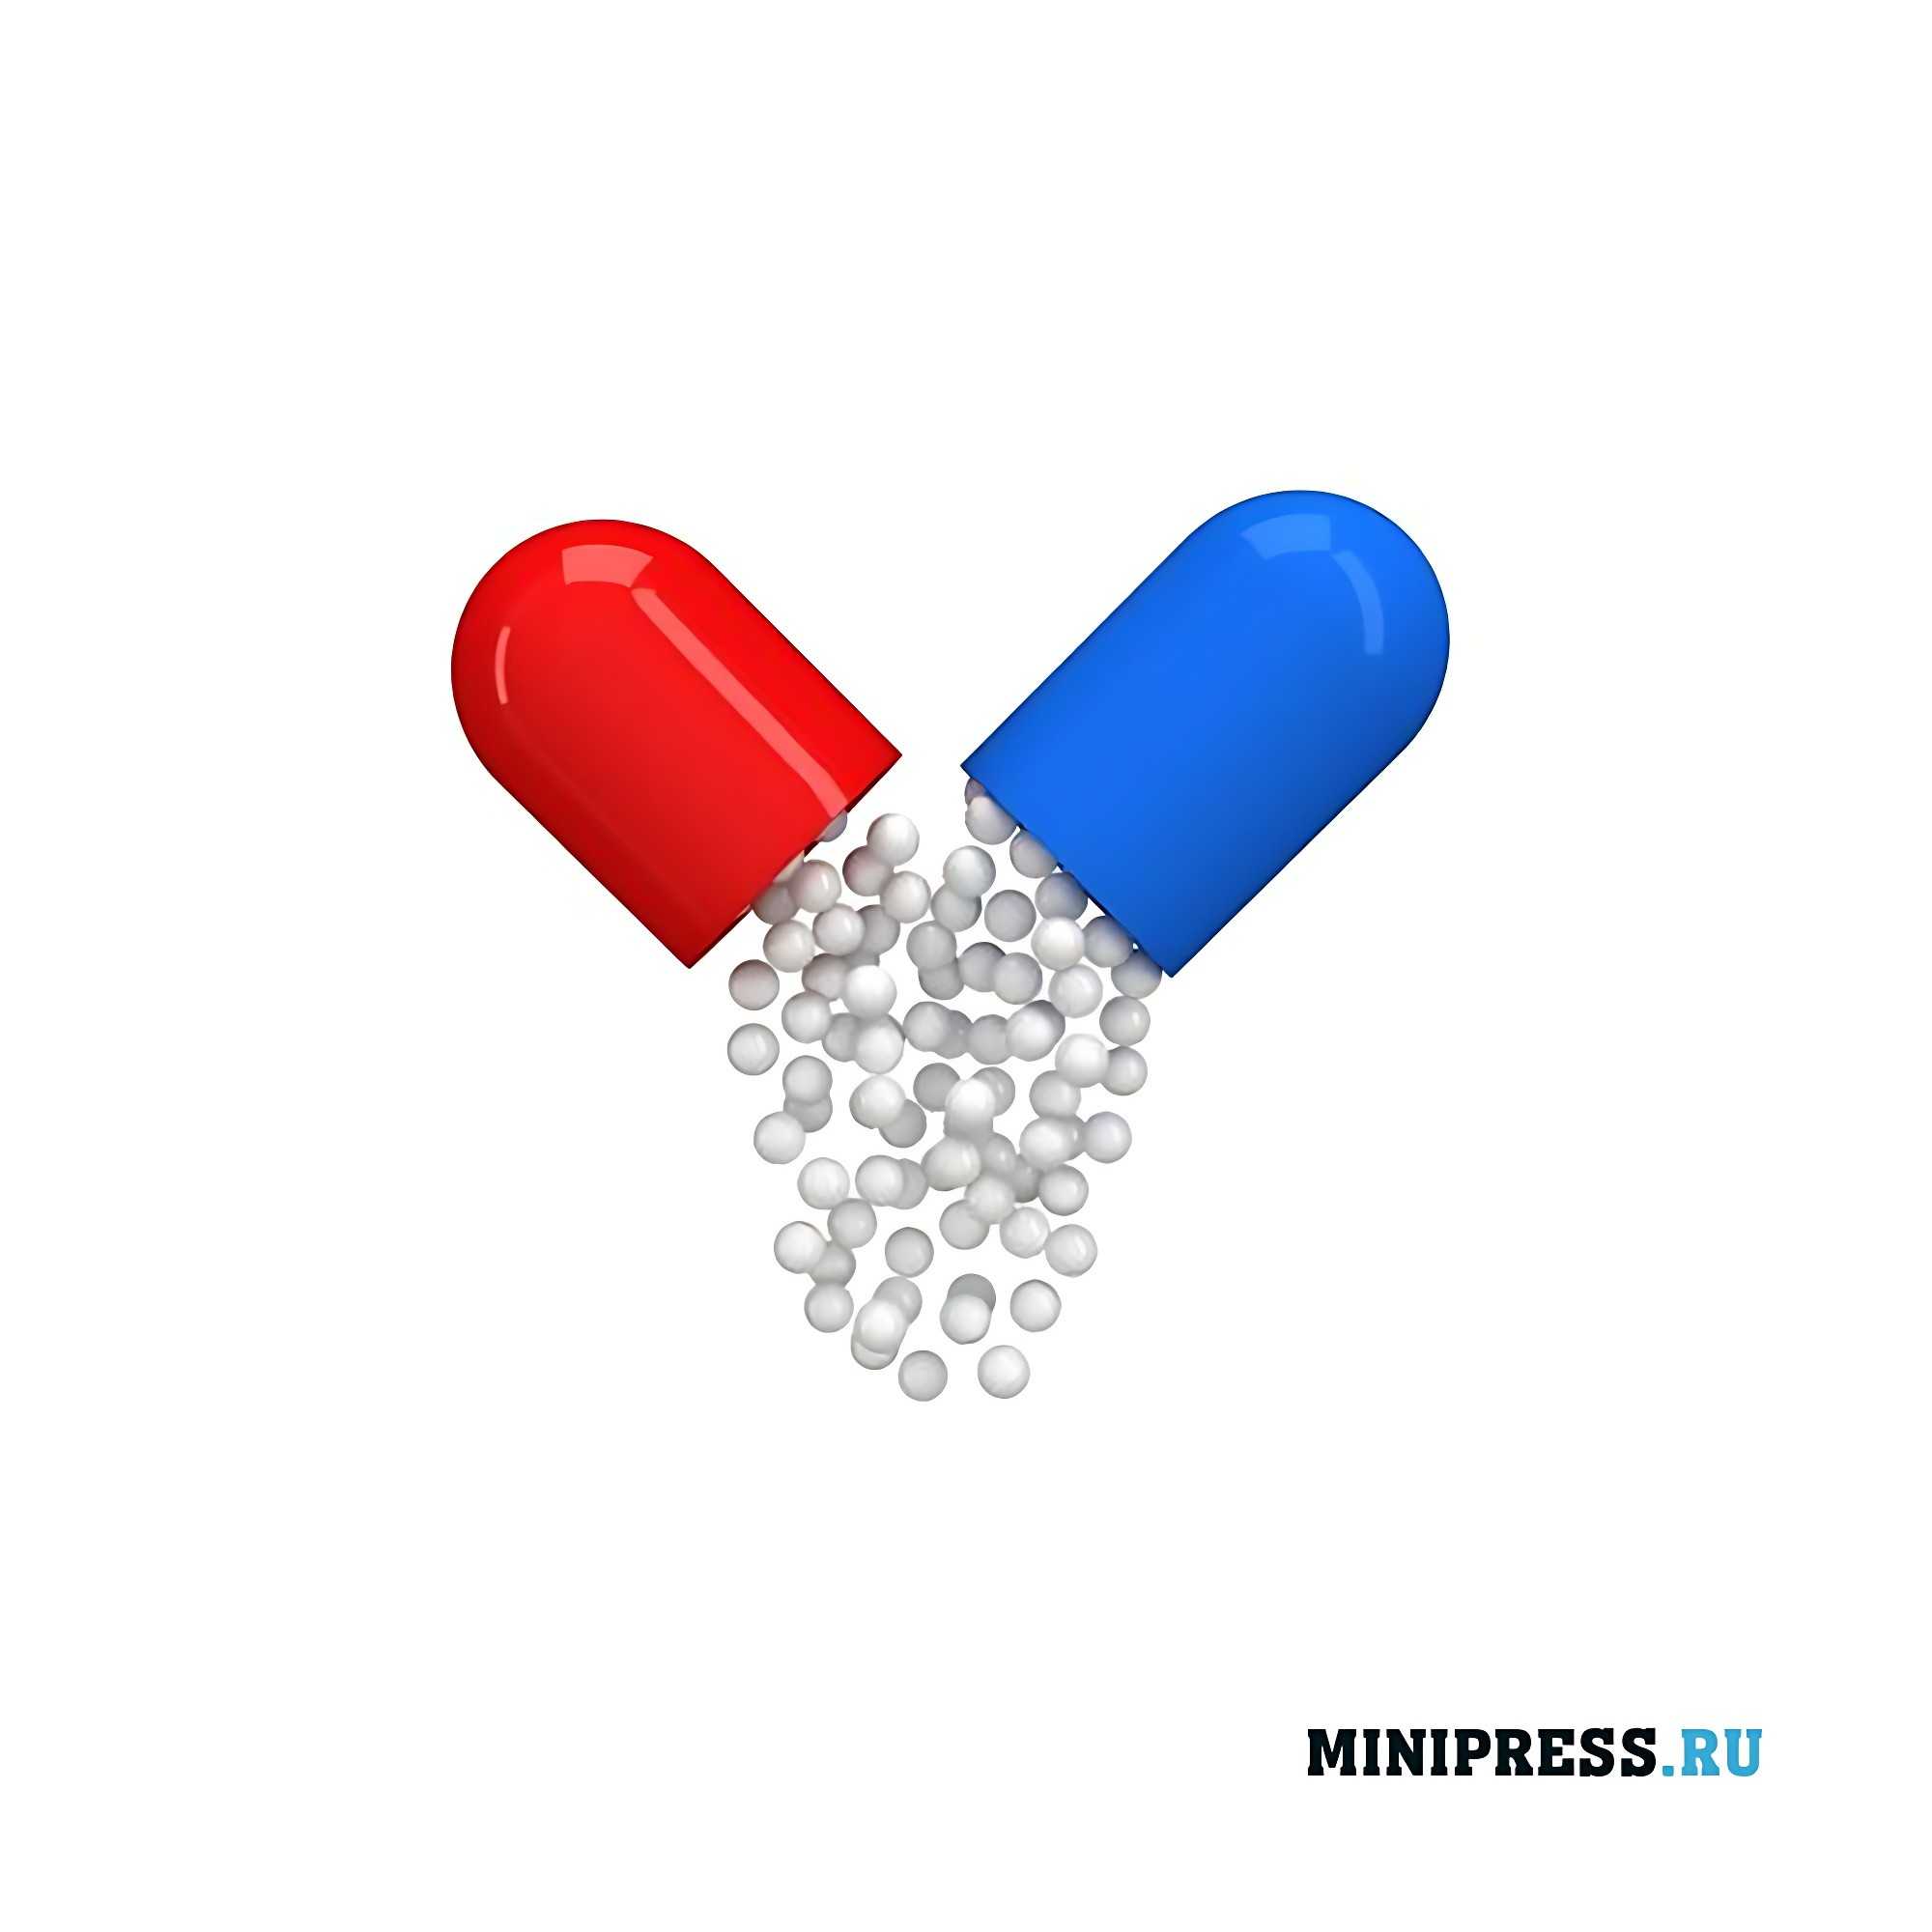 Microesferas de pellets farmacéuticos